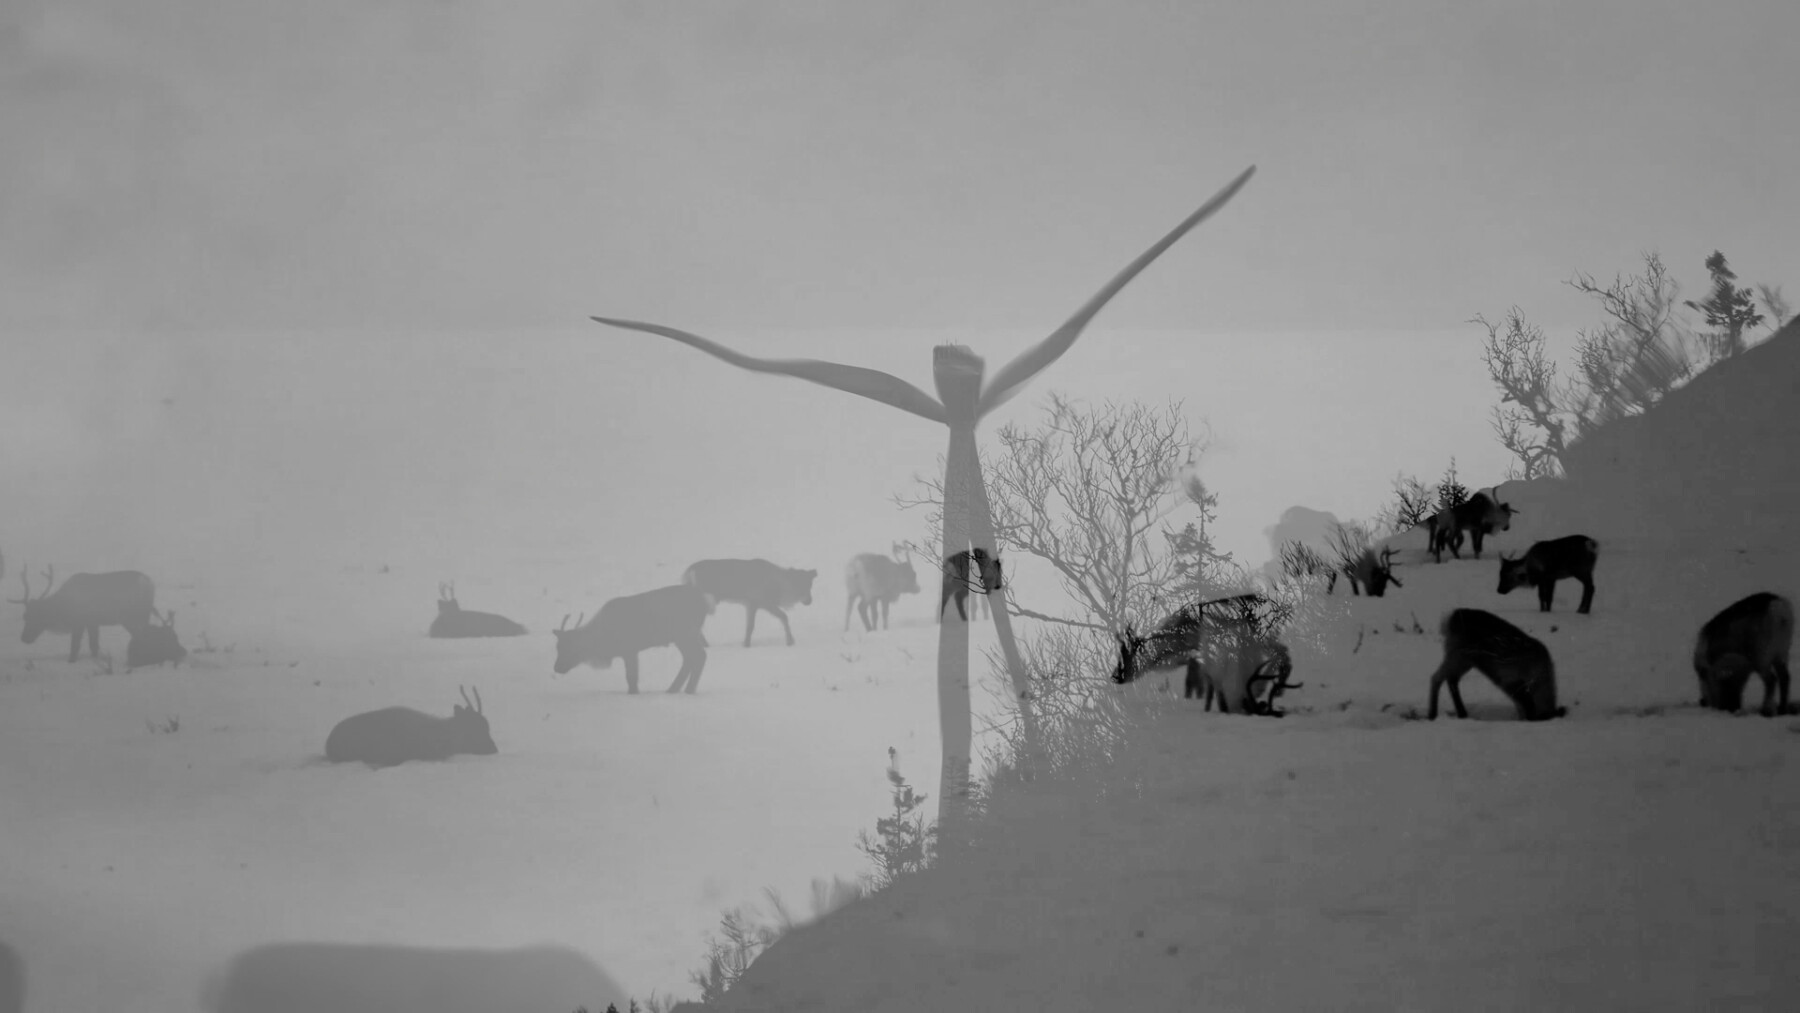 Duas imagens em preto e branco estão sobrepostas: uma mostra renas pastando e a outra mostra uma turbina eólica.